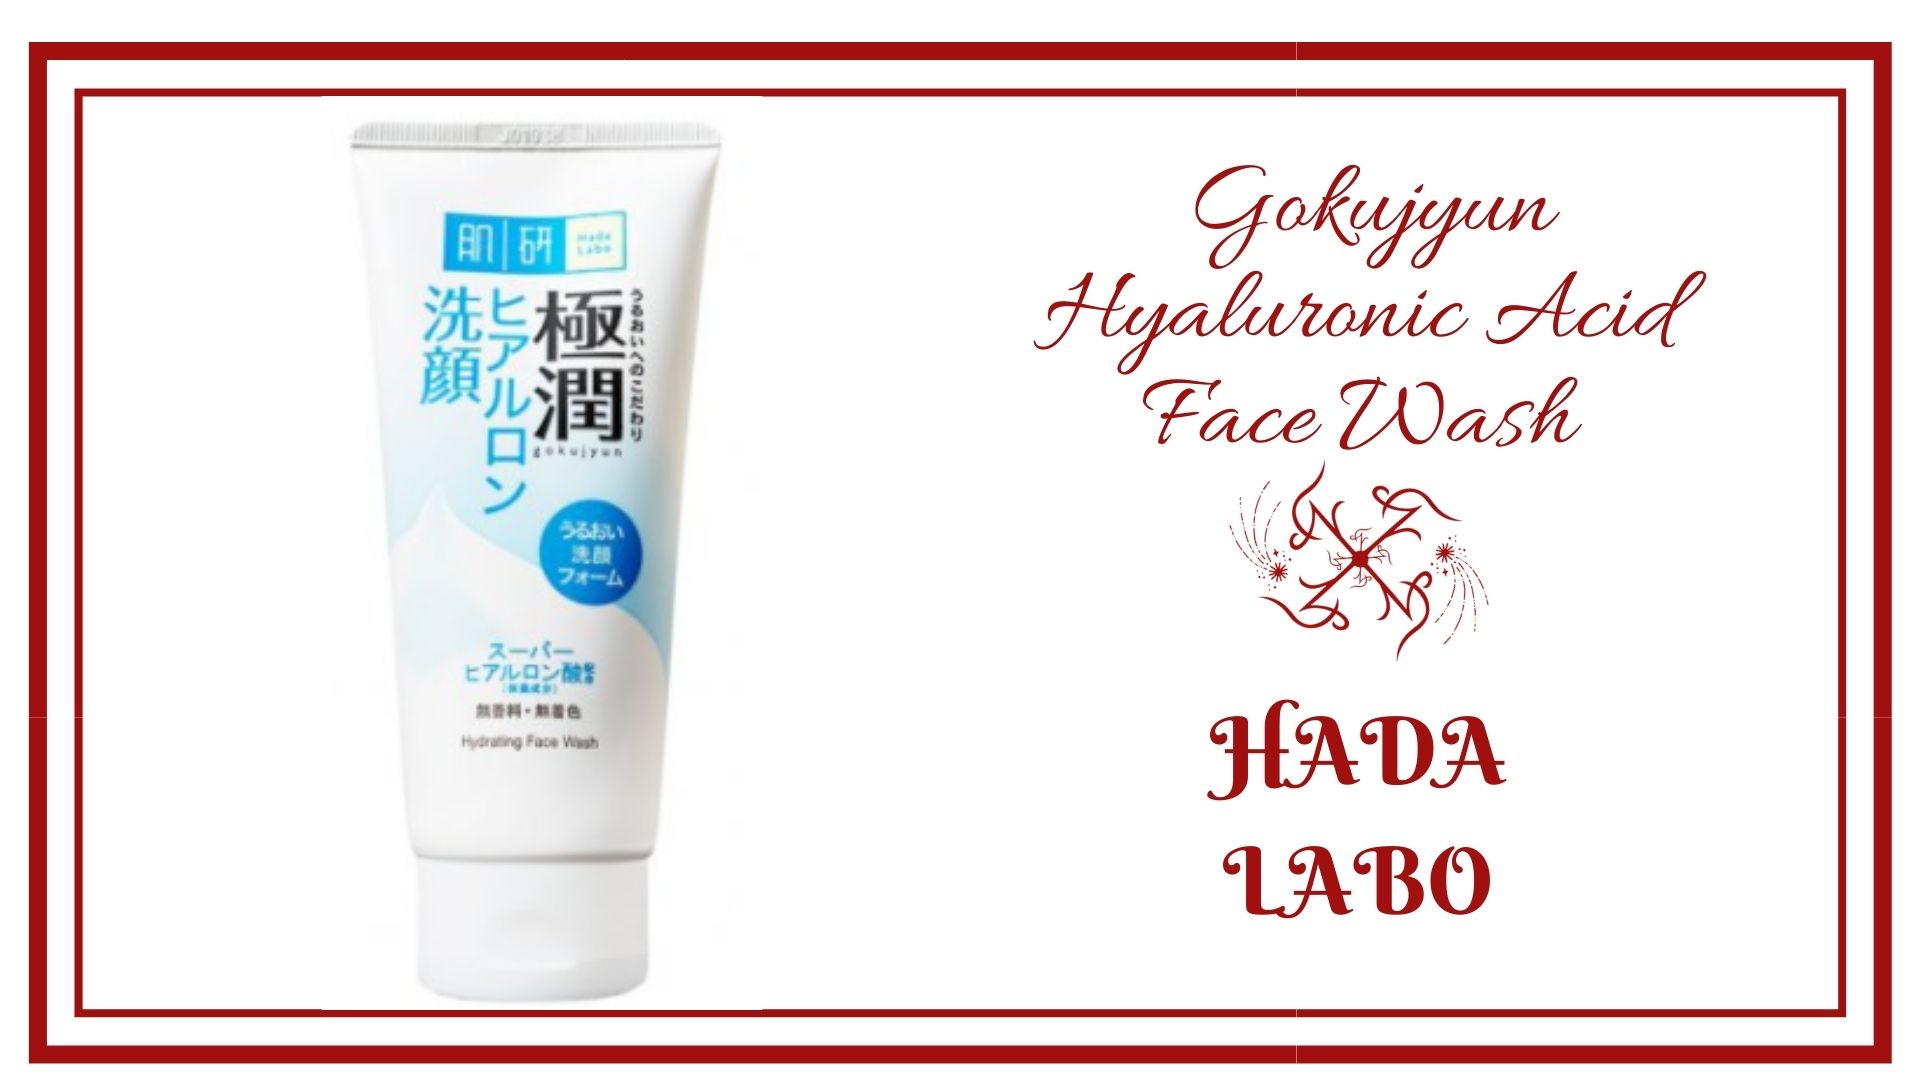 Hada Labo - Gokujyun Hyaluronic Acid Face Wash